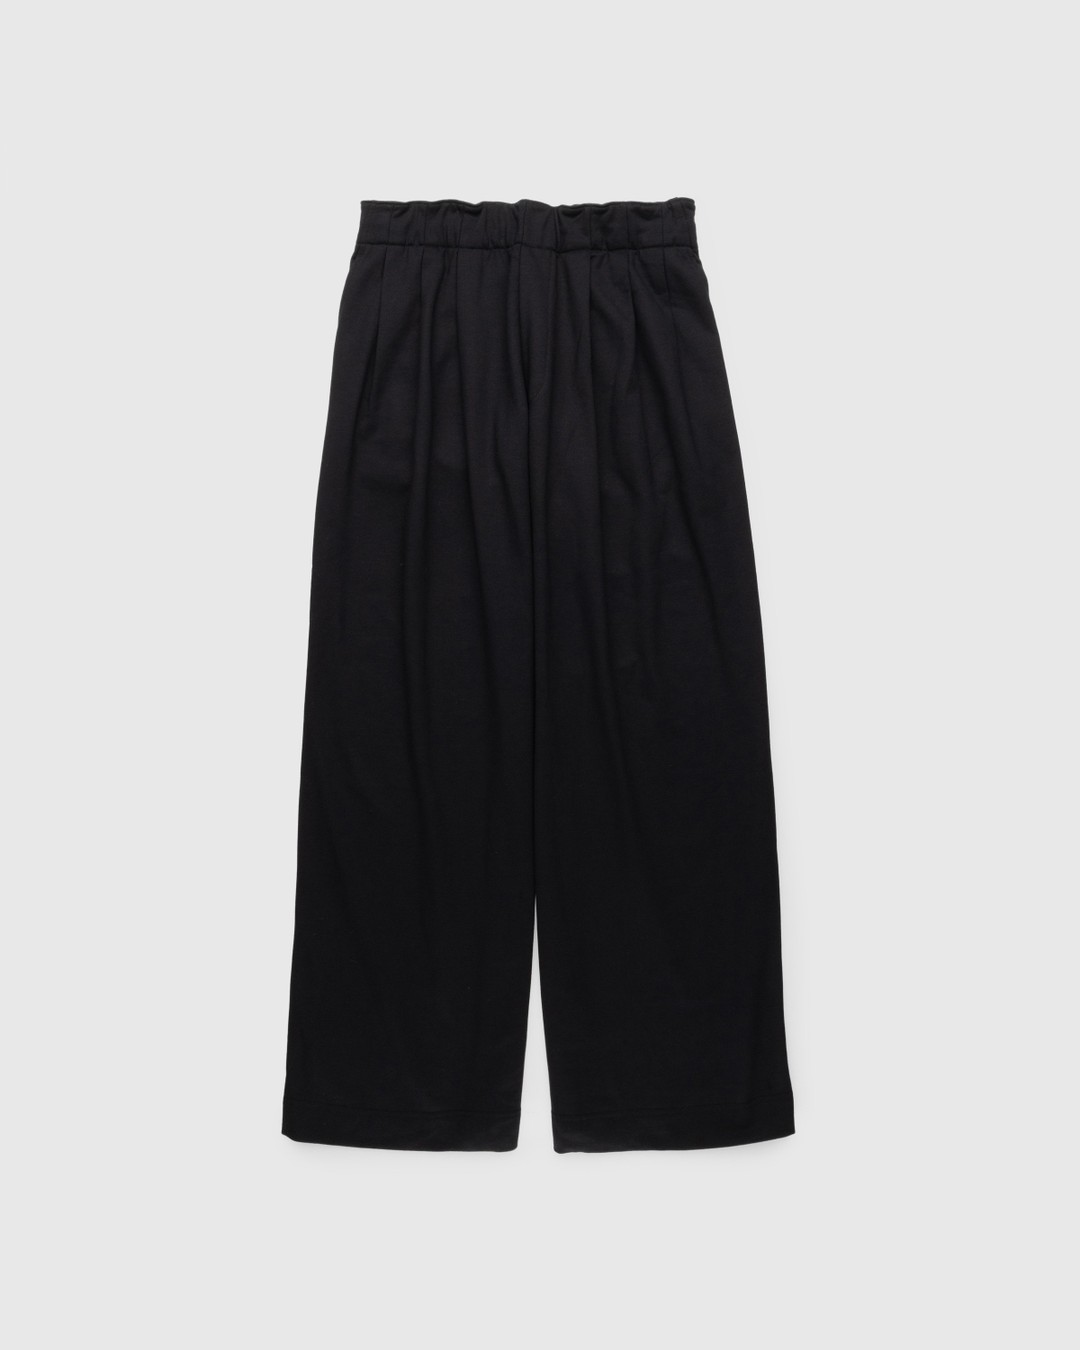 Dries van Noten – Hama Cotton Jersey Pants Black - Tops - Black - Image 1